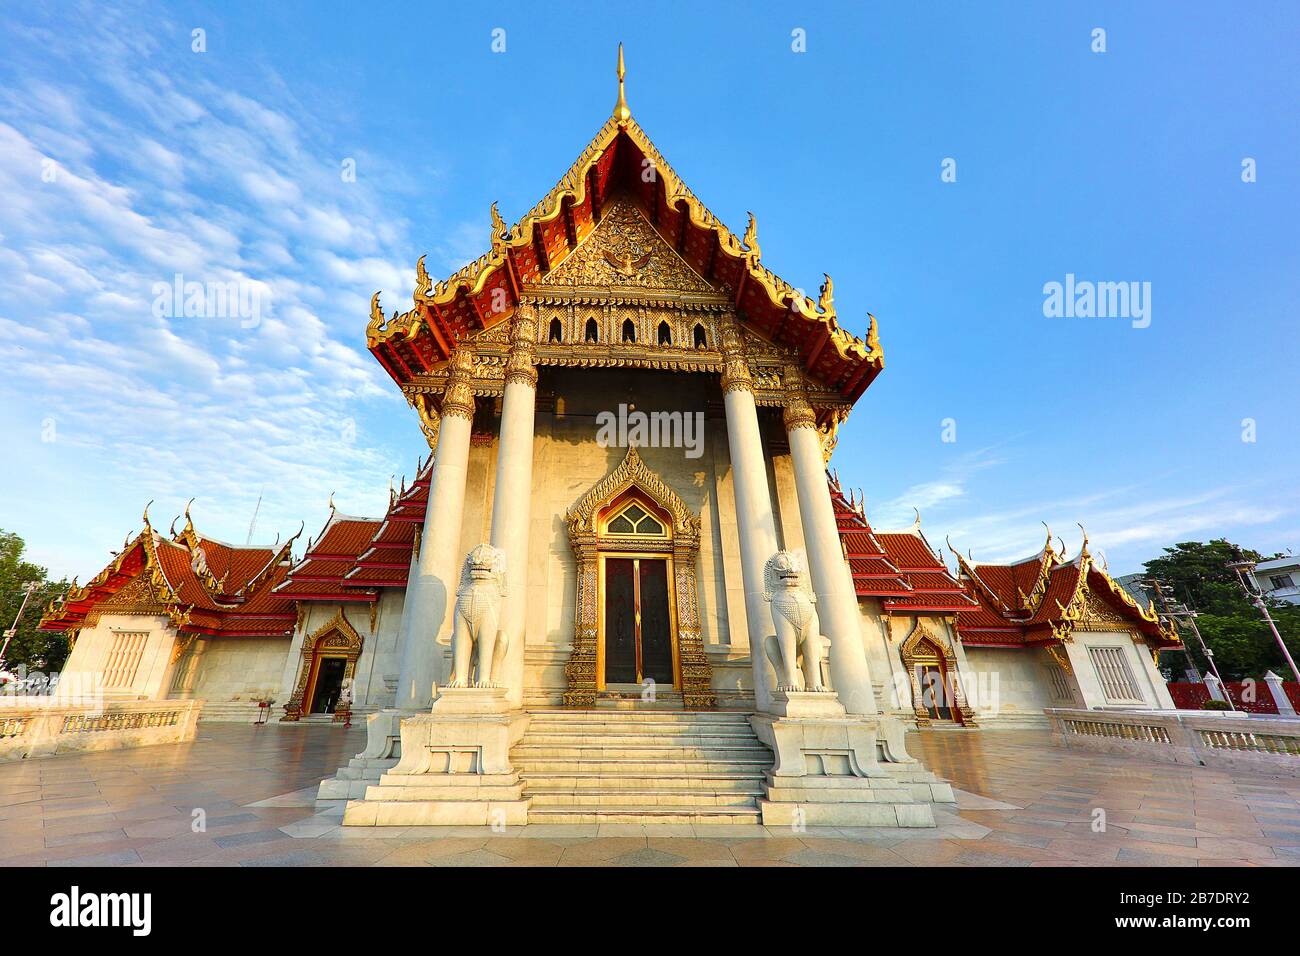 Temple bouddhiste en marbre connu aussi sous le nom de Wat Benchamabolit Dusitvanaram à Bangkok, Thaïlande. Banque D'Images